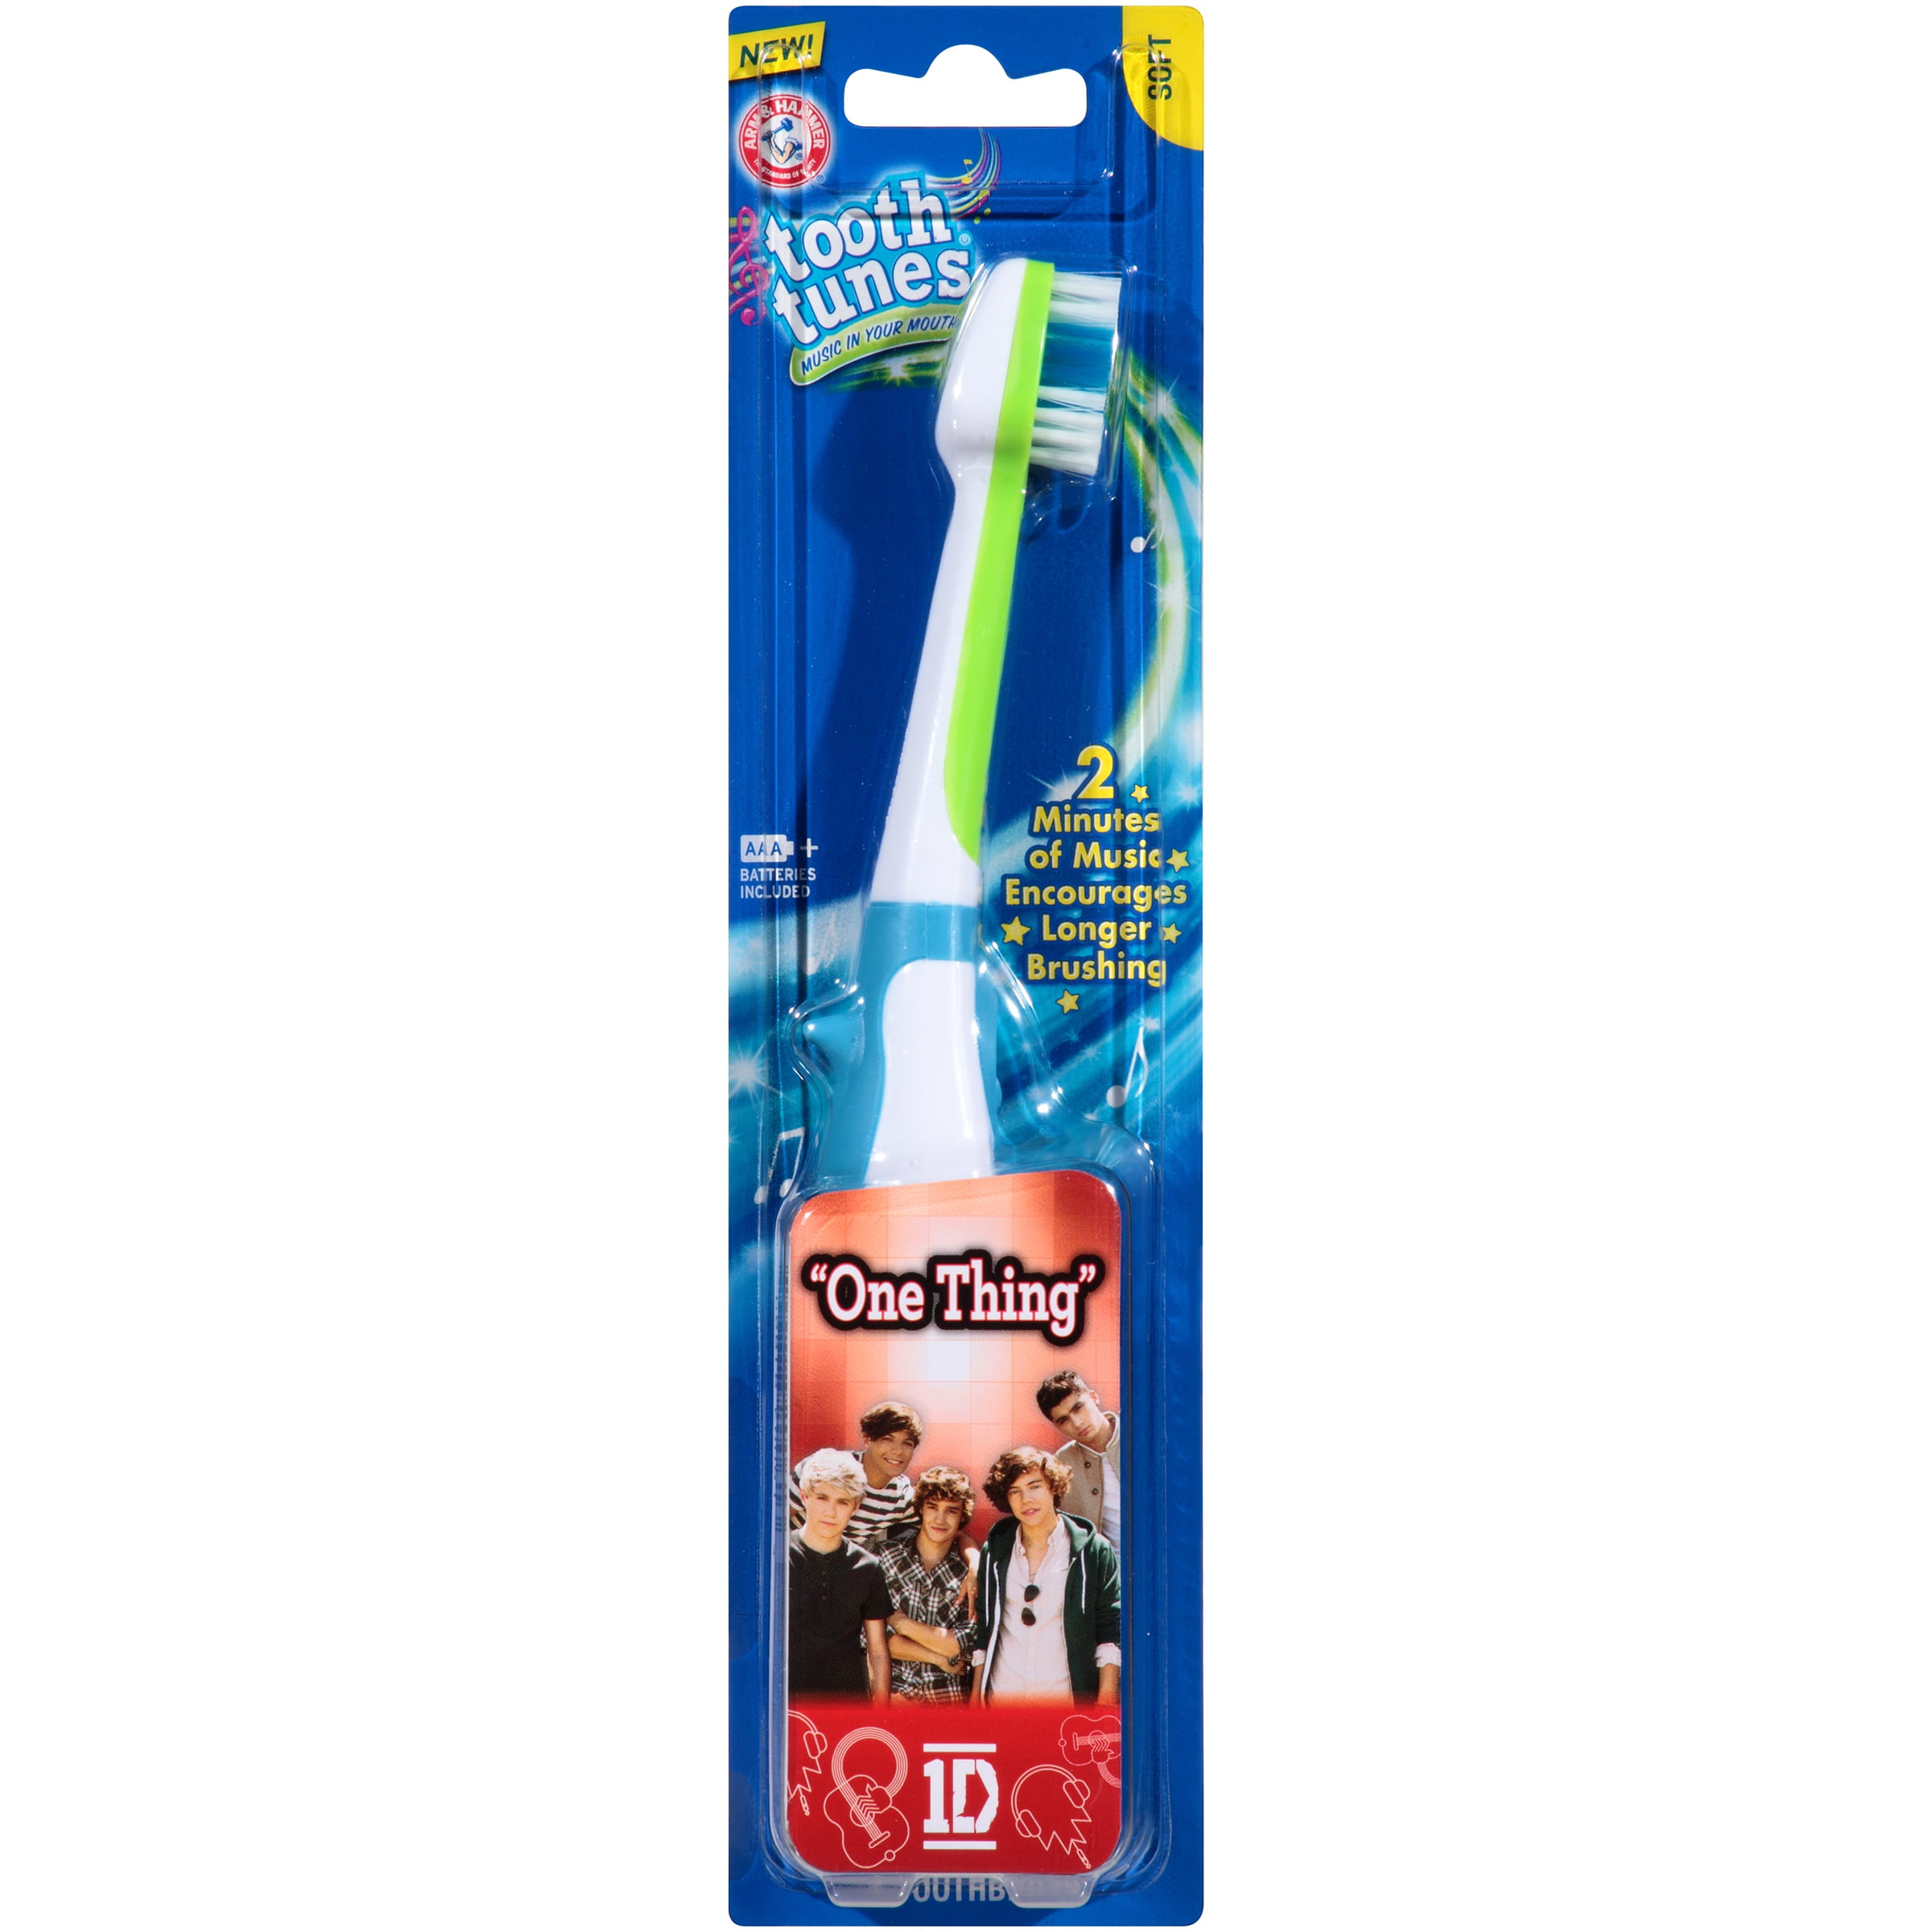 singing kids toothbrush